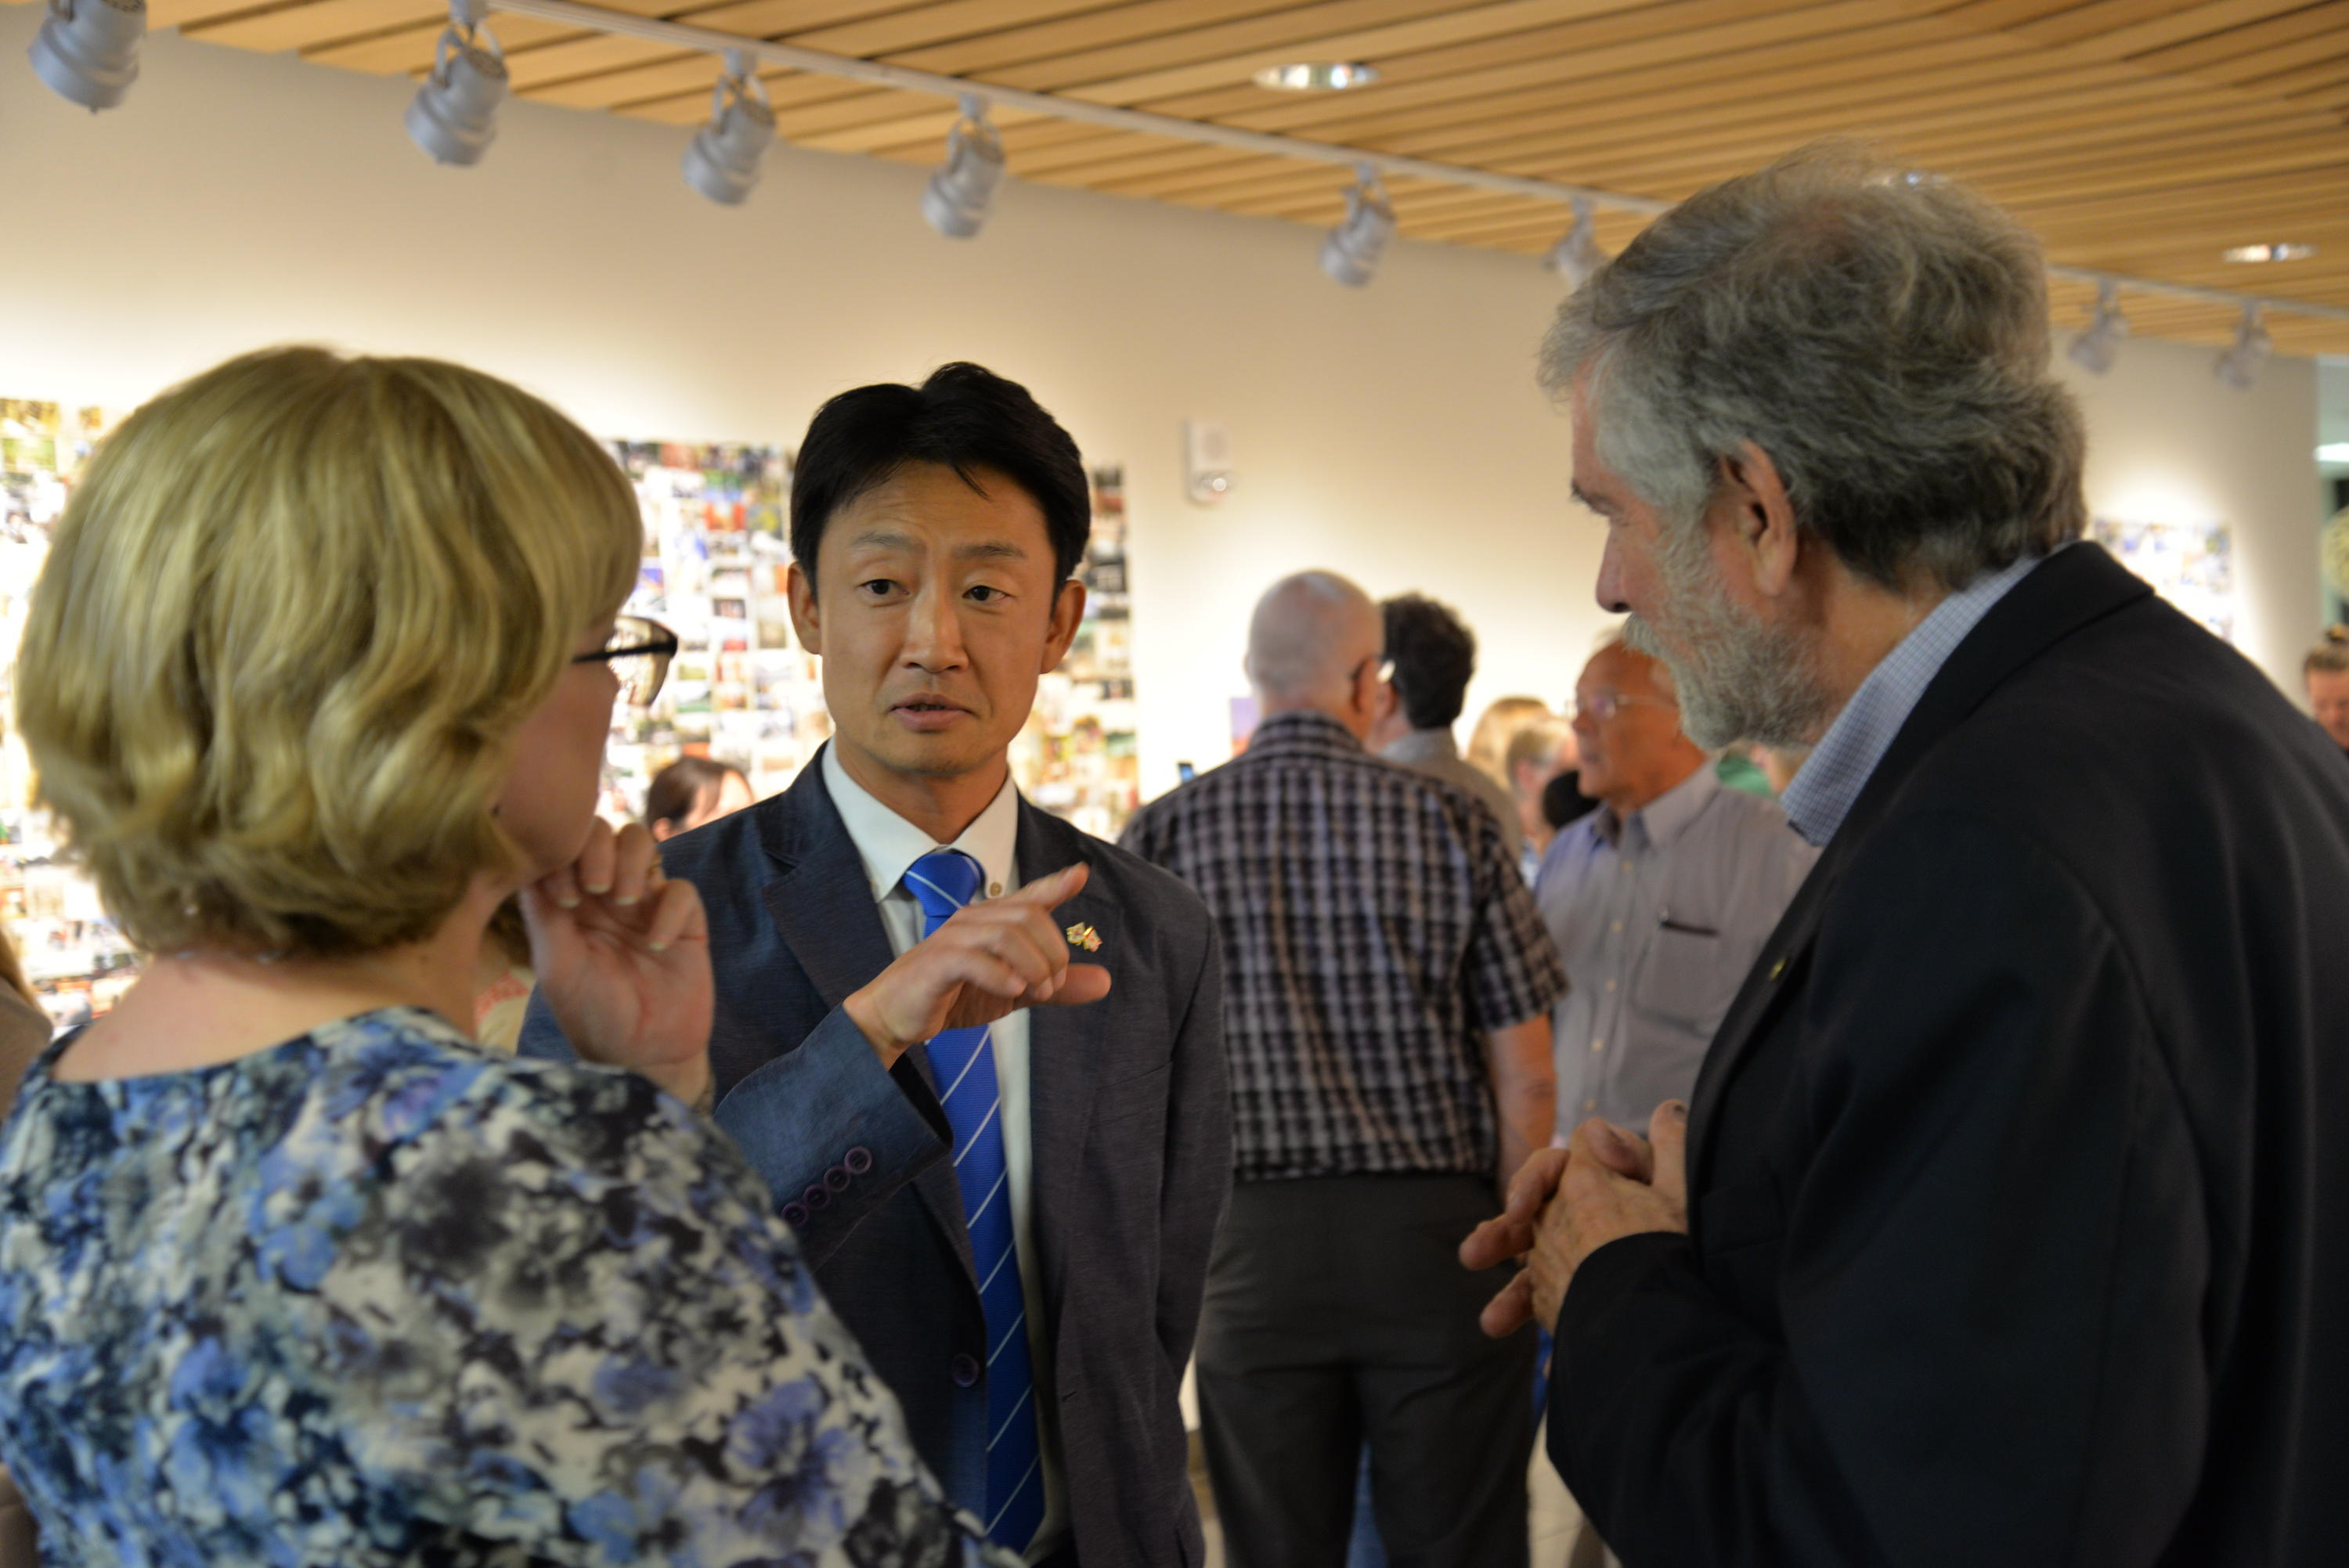 Doug Hosteter speaks with exhibit guests